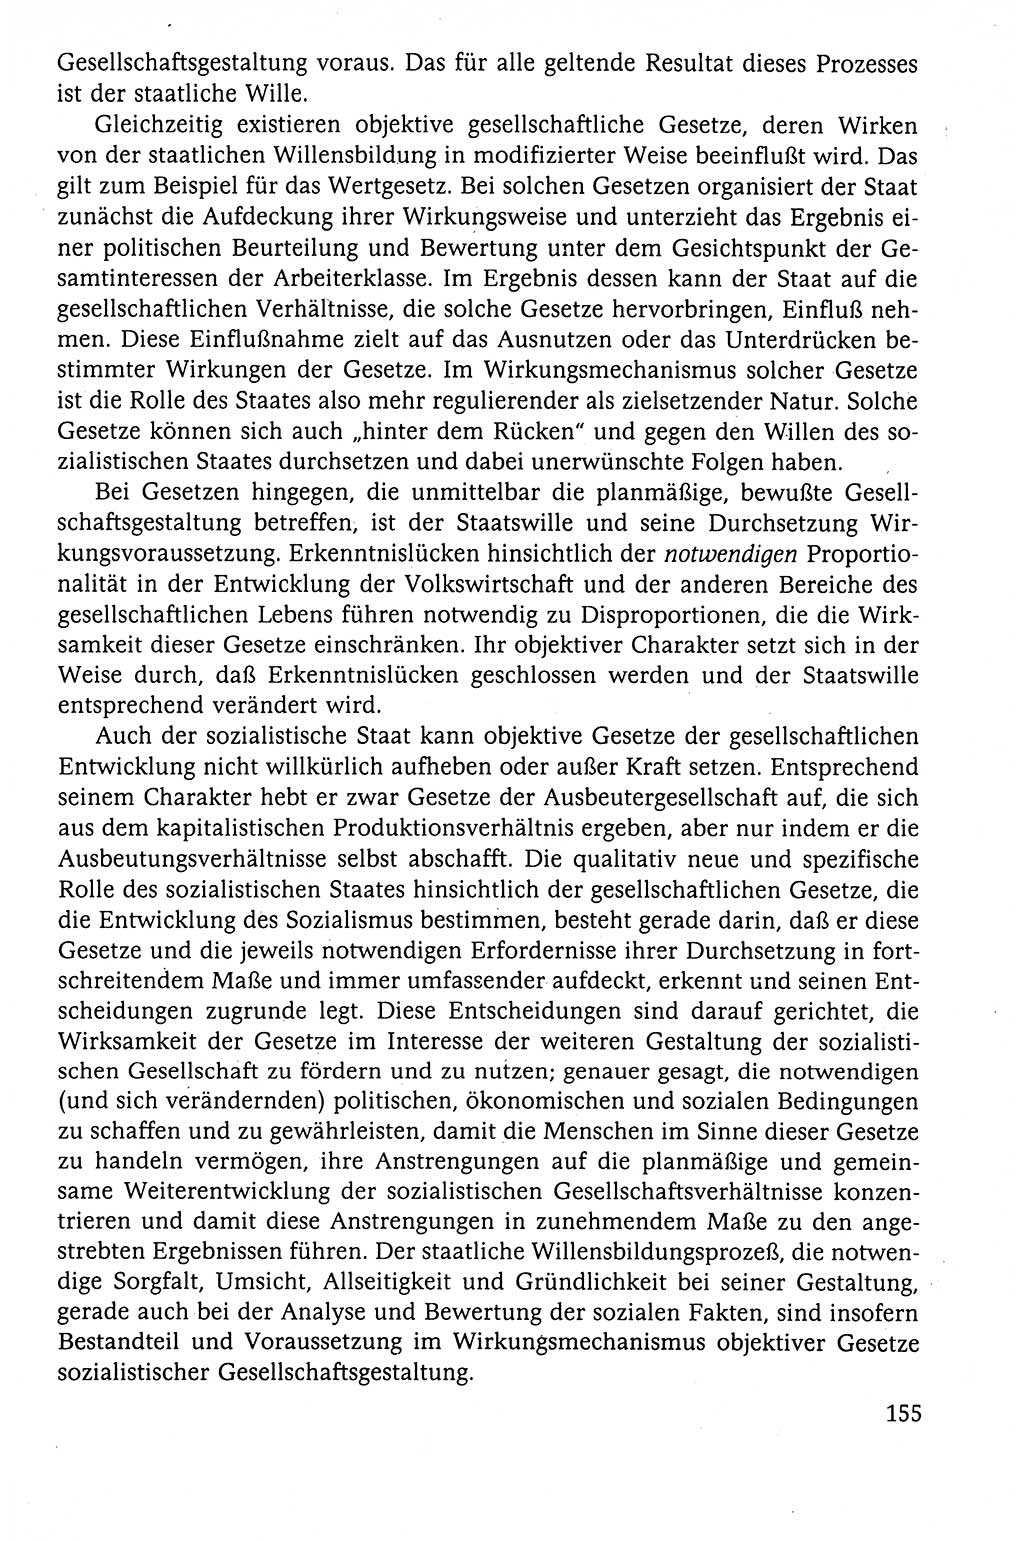 Der Staat im politischen System der DDR (Deutsche Demokratische Republik) 1986, Seite 155 (St. pol. Sys. DDR 1986, S. 155)